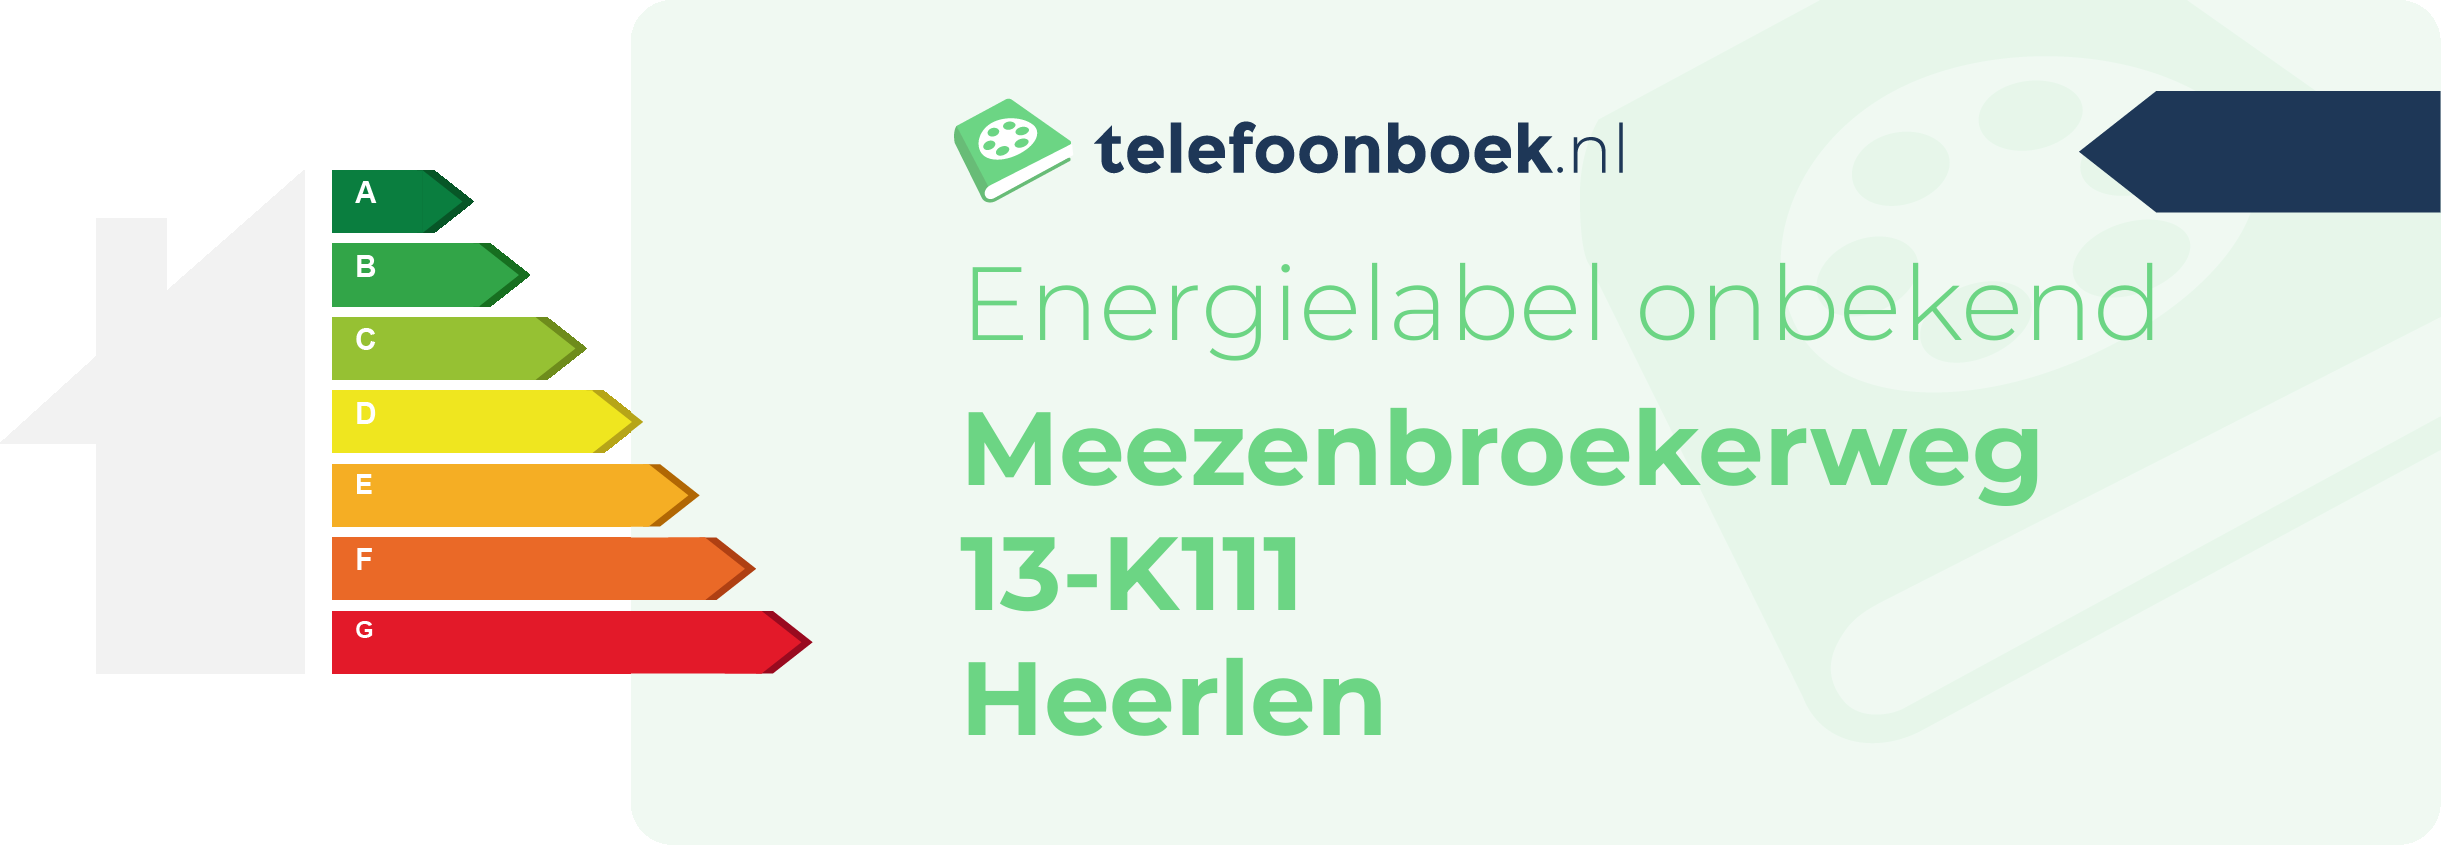 Energielabel Meezenbroekerweg 13-K111 Heerlen